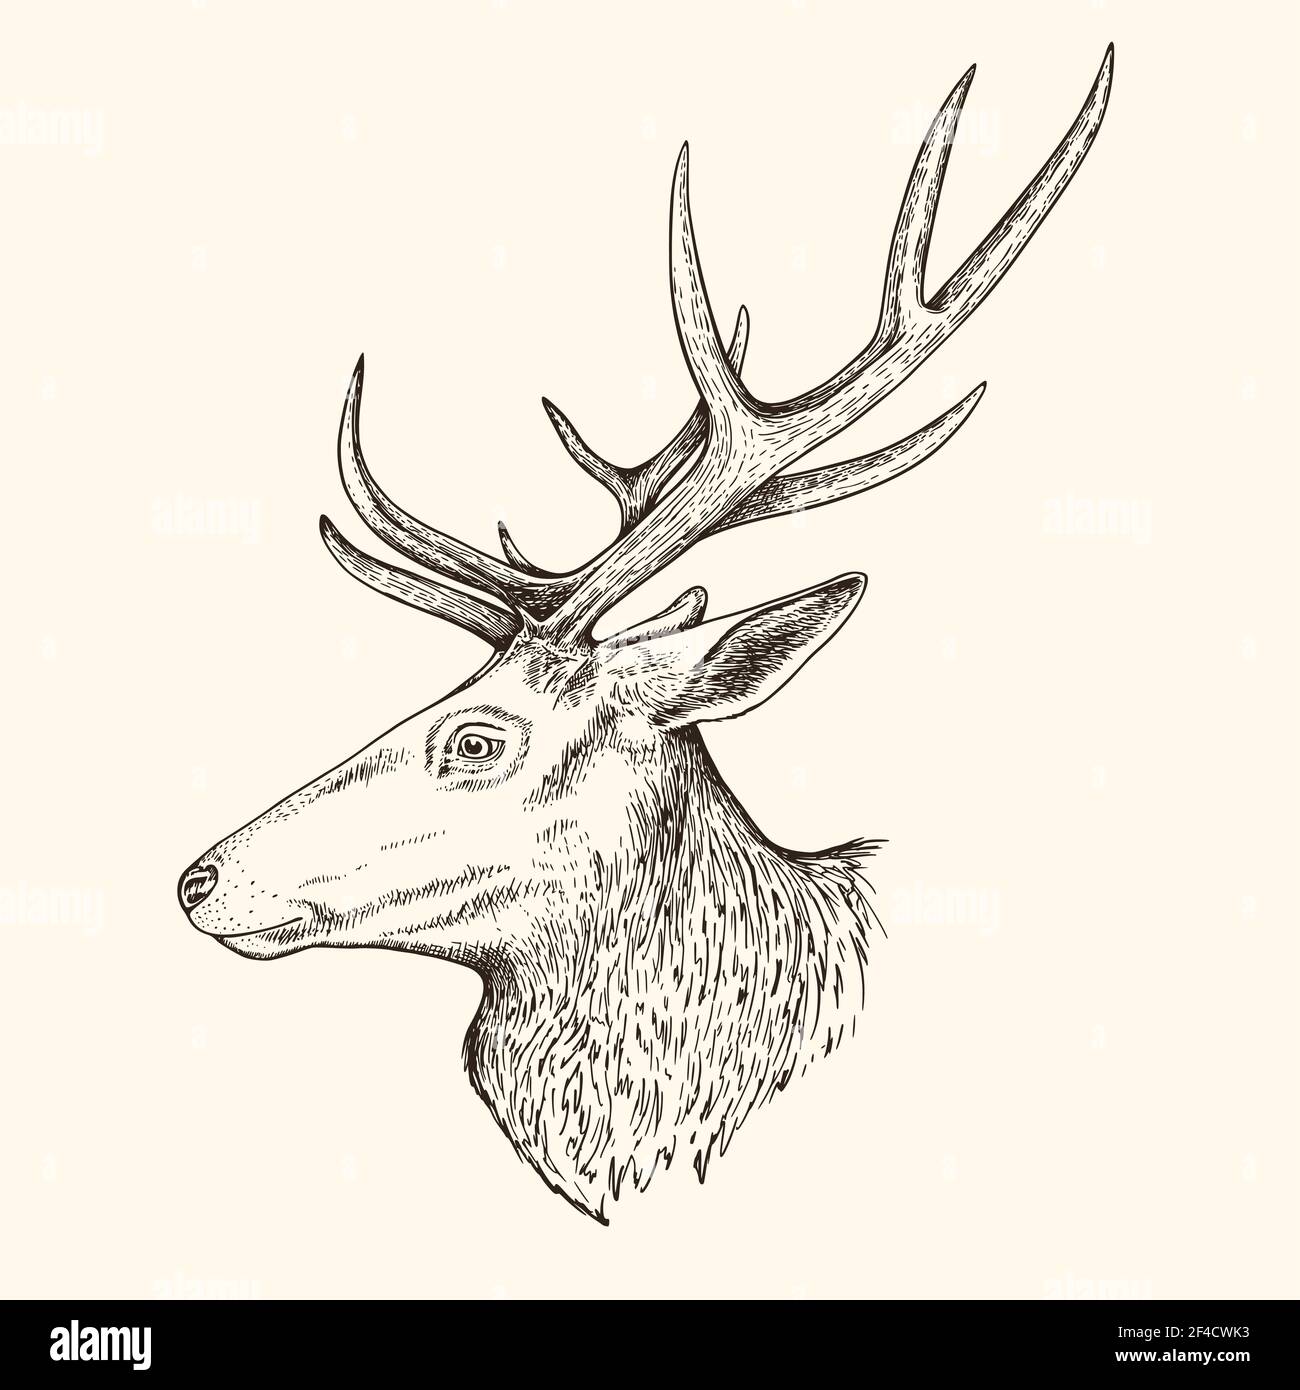 Illustrazione vettoriale disegnata a mano del cervo. Vintage schizzo di animale nella natura selvaggia Illustrazione Vettoriale